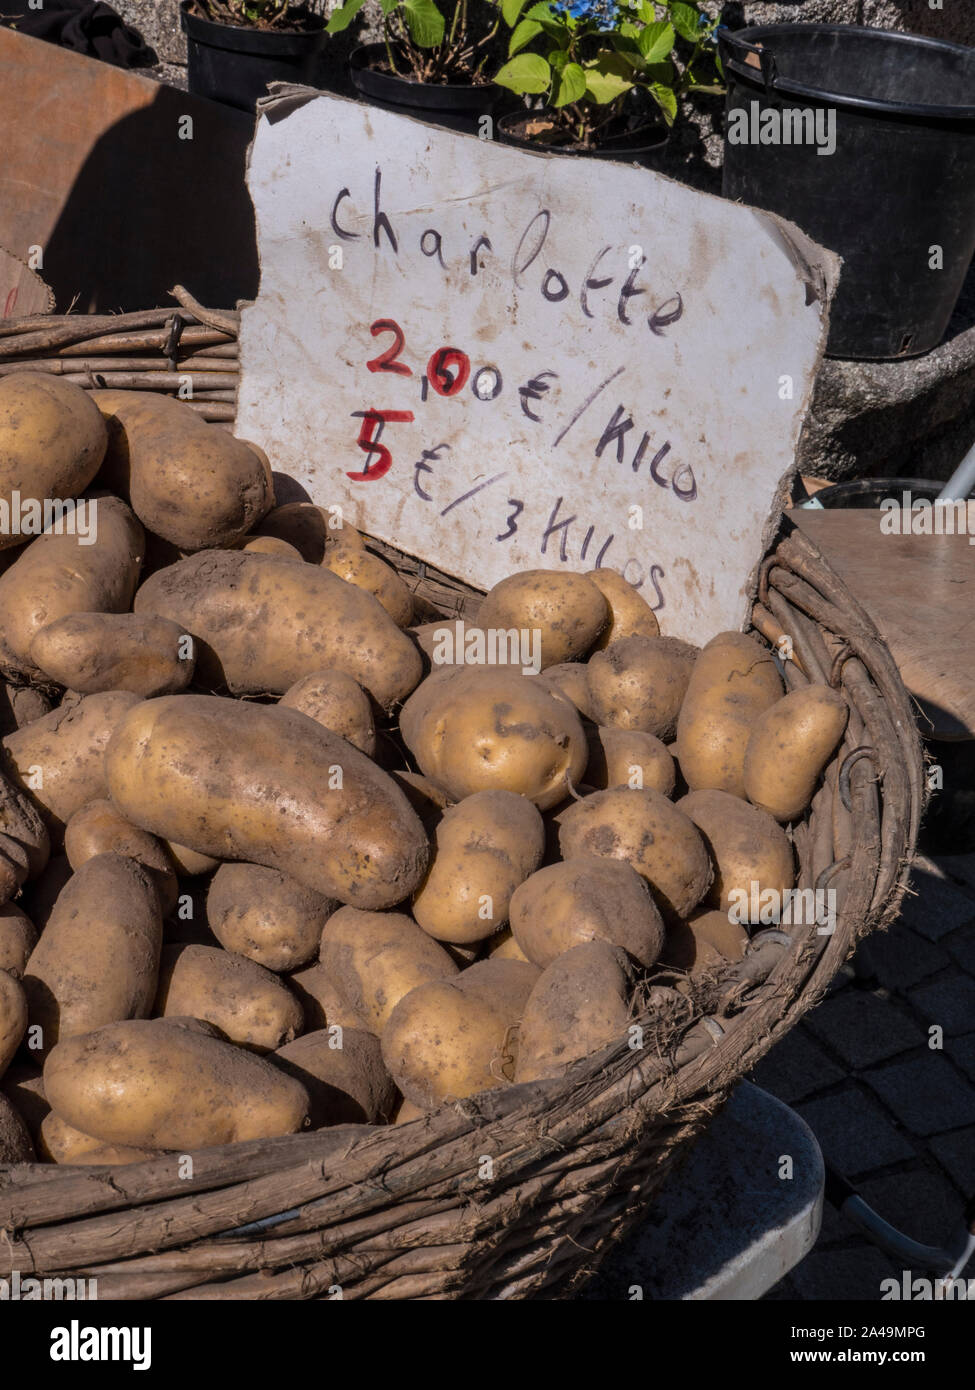 Patate CHARLOTTE FRANCESE 2€ kilo bauletto cesto di patate francesi sul display in fresco di mercato degli agricoltori Nevéz Bretagna Francia Foto Stock